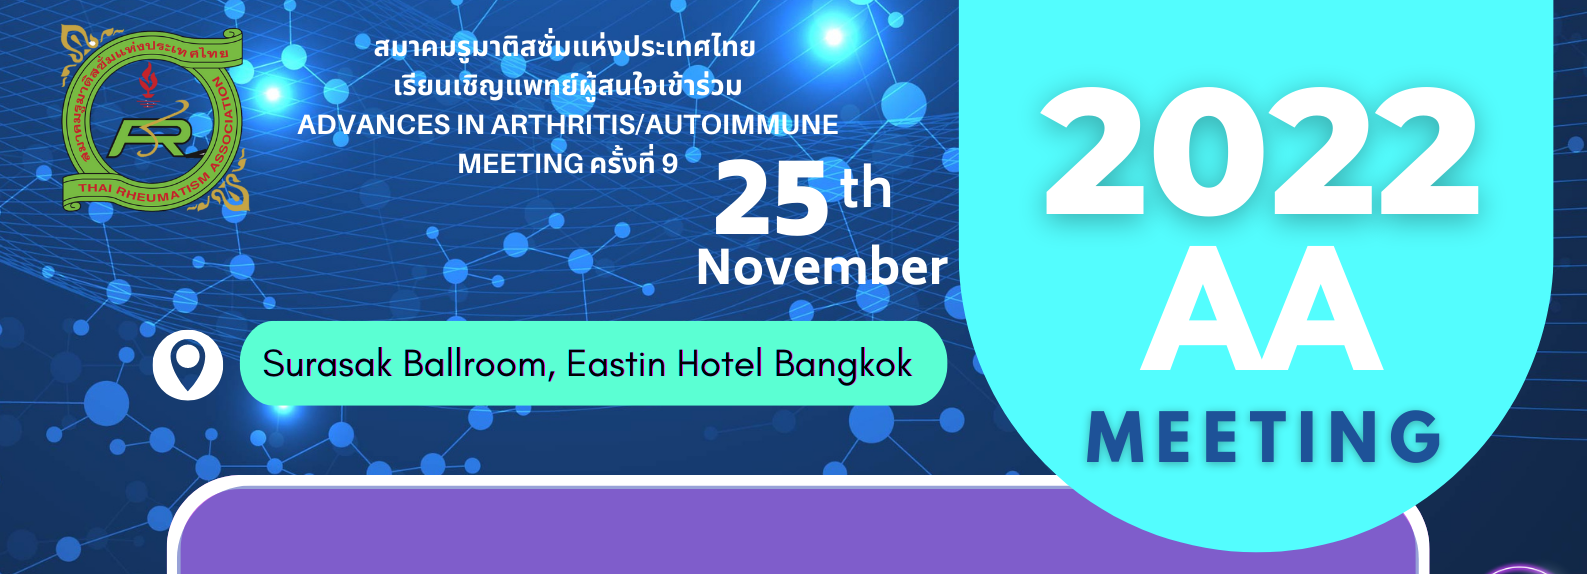 การประชุมวิชาการ Advances in Arthritis and Autoimmune meeting ครั้งที่ 9